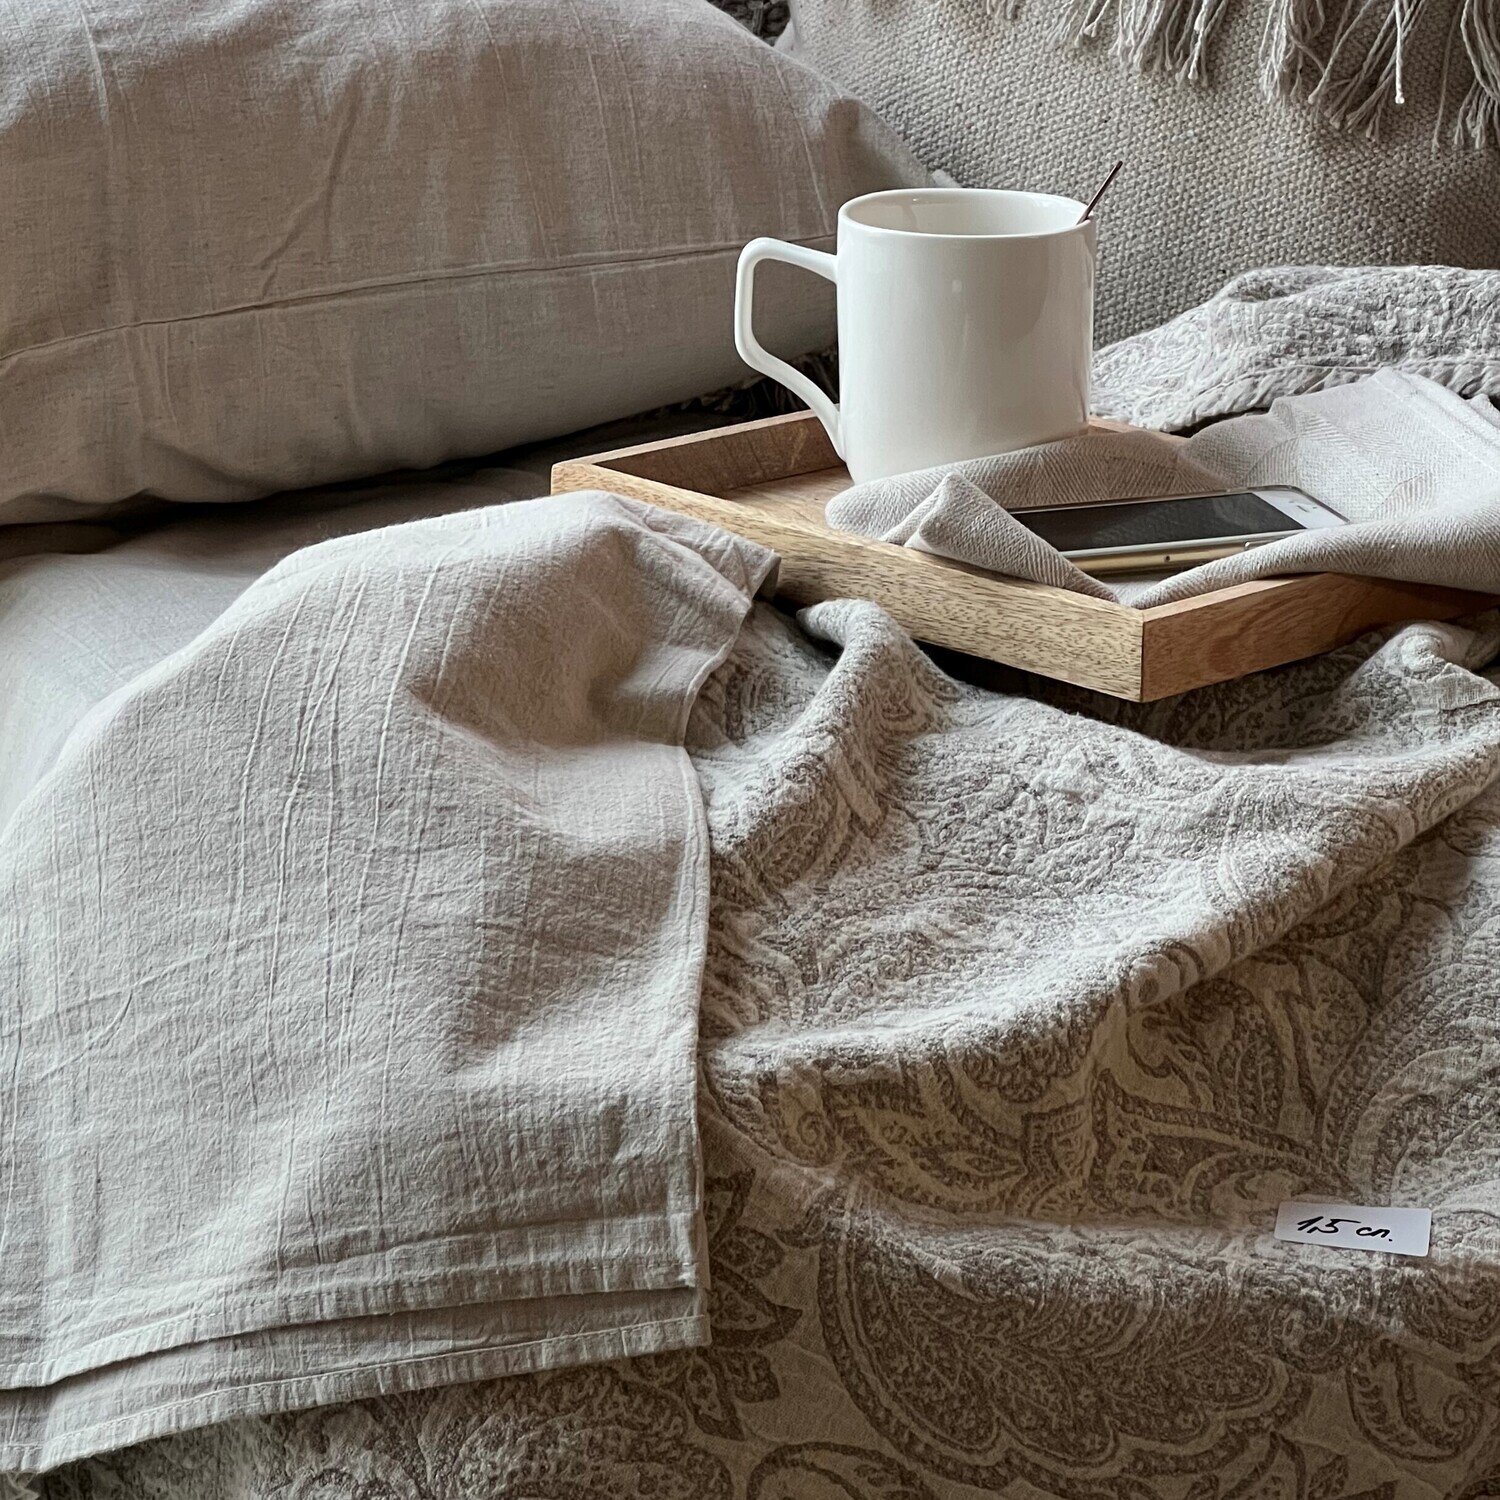 Комплект постельного белья из умягченного льна бежевый 2 спальный